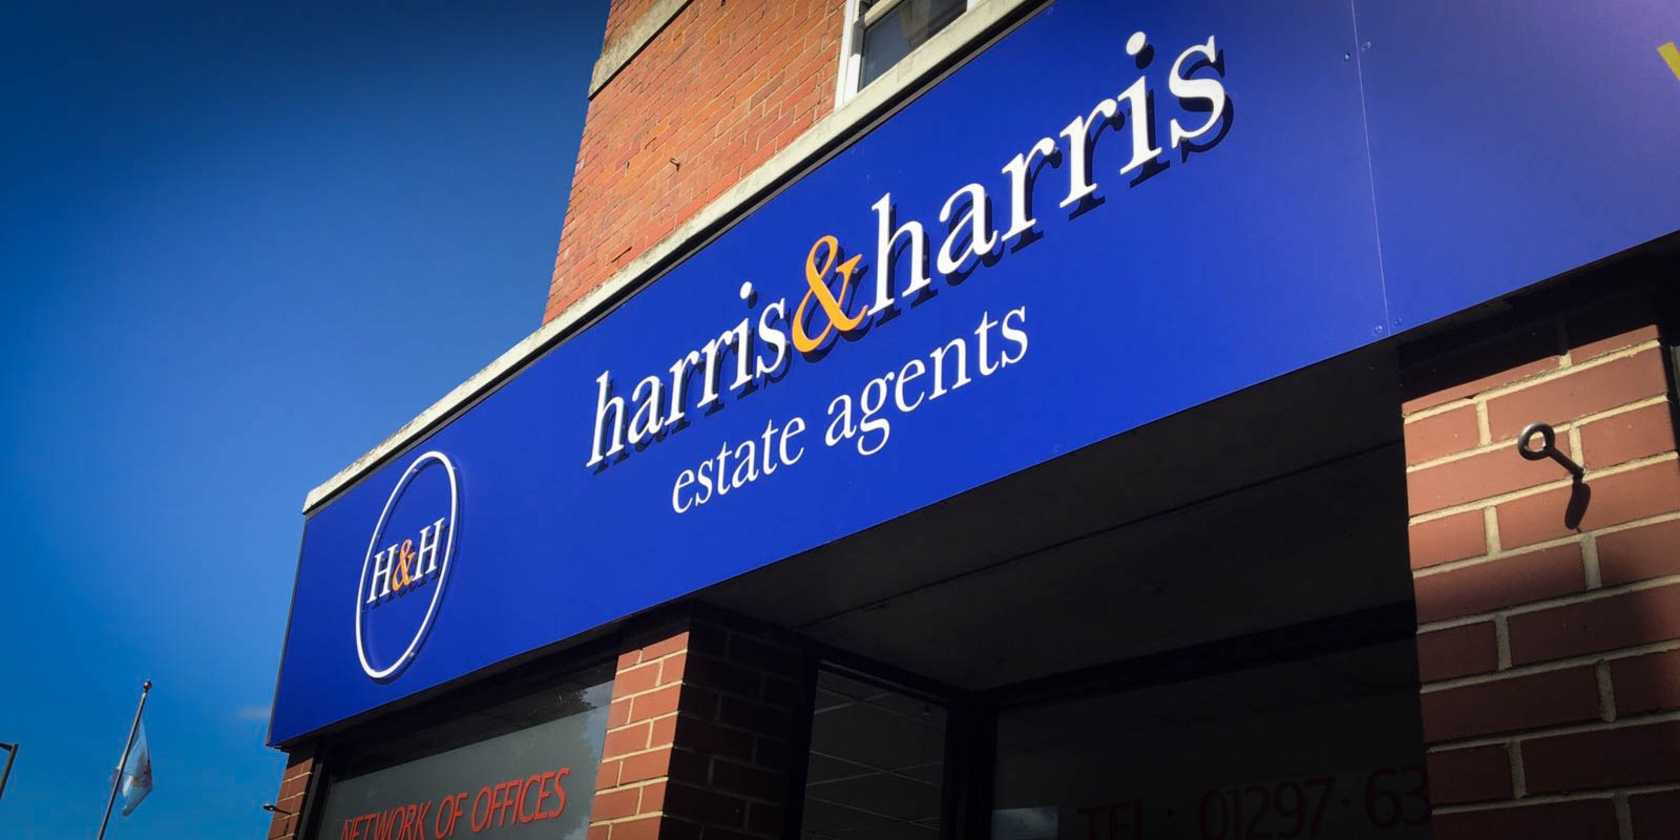 Estate Agent Signage Harris and Harris